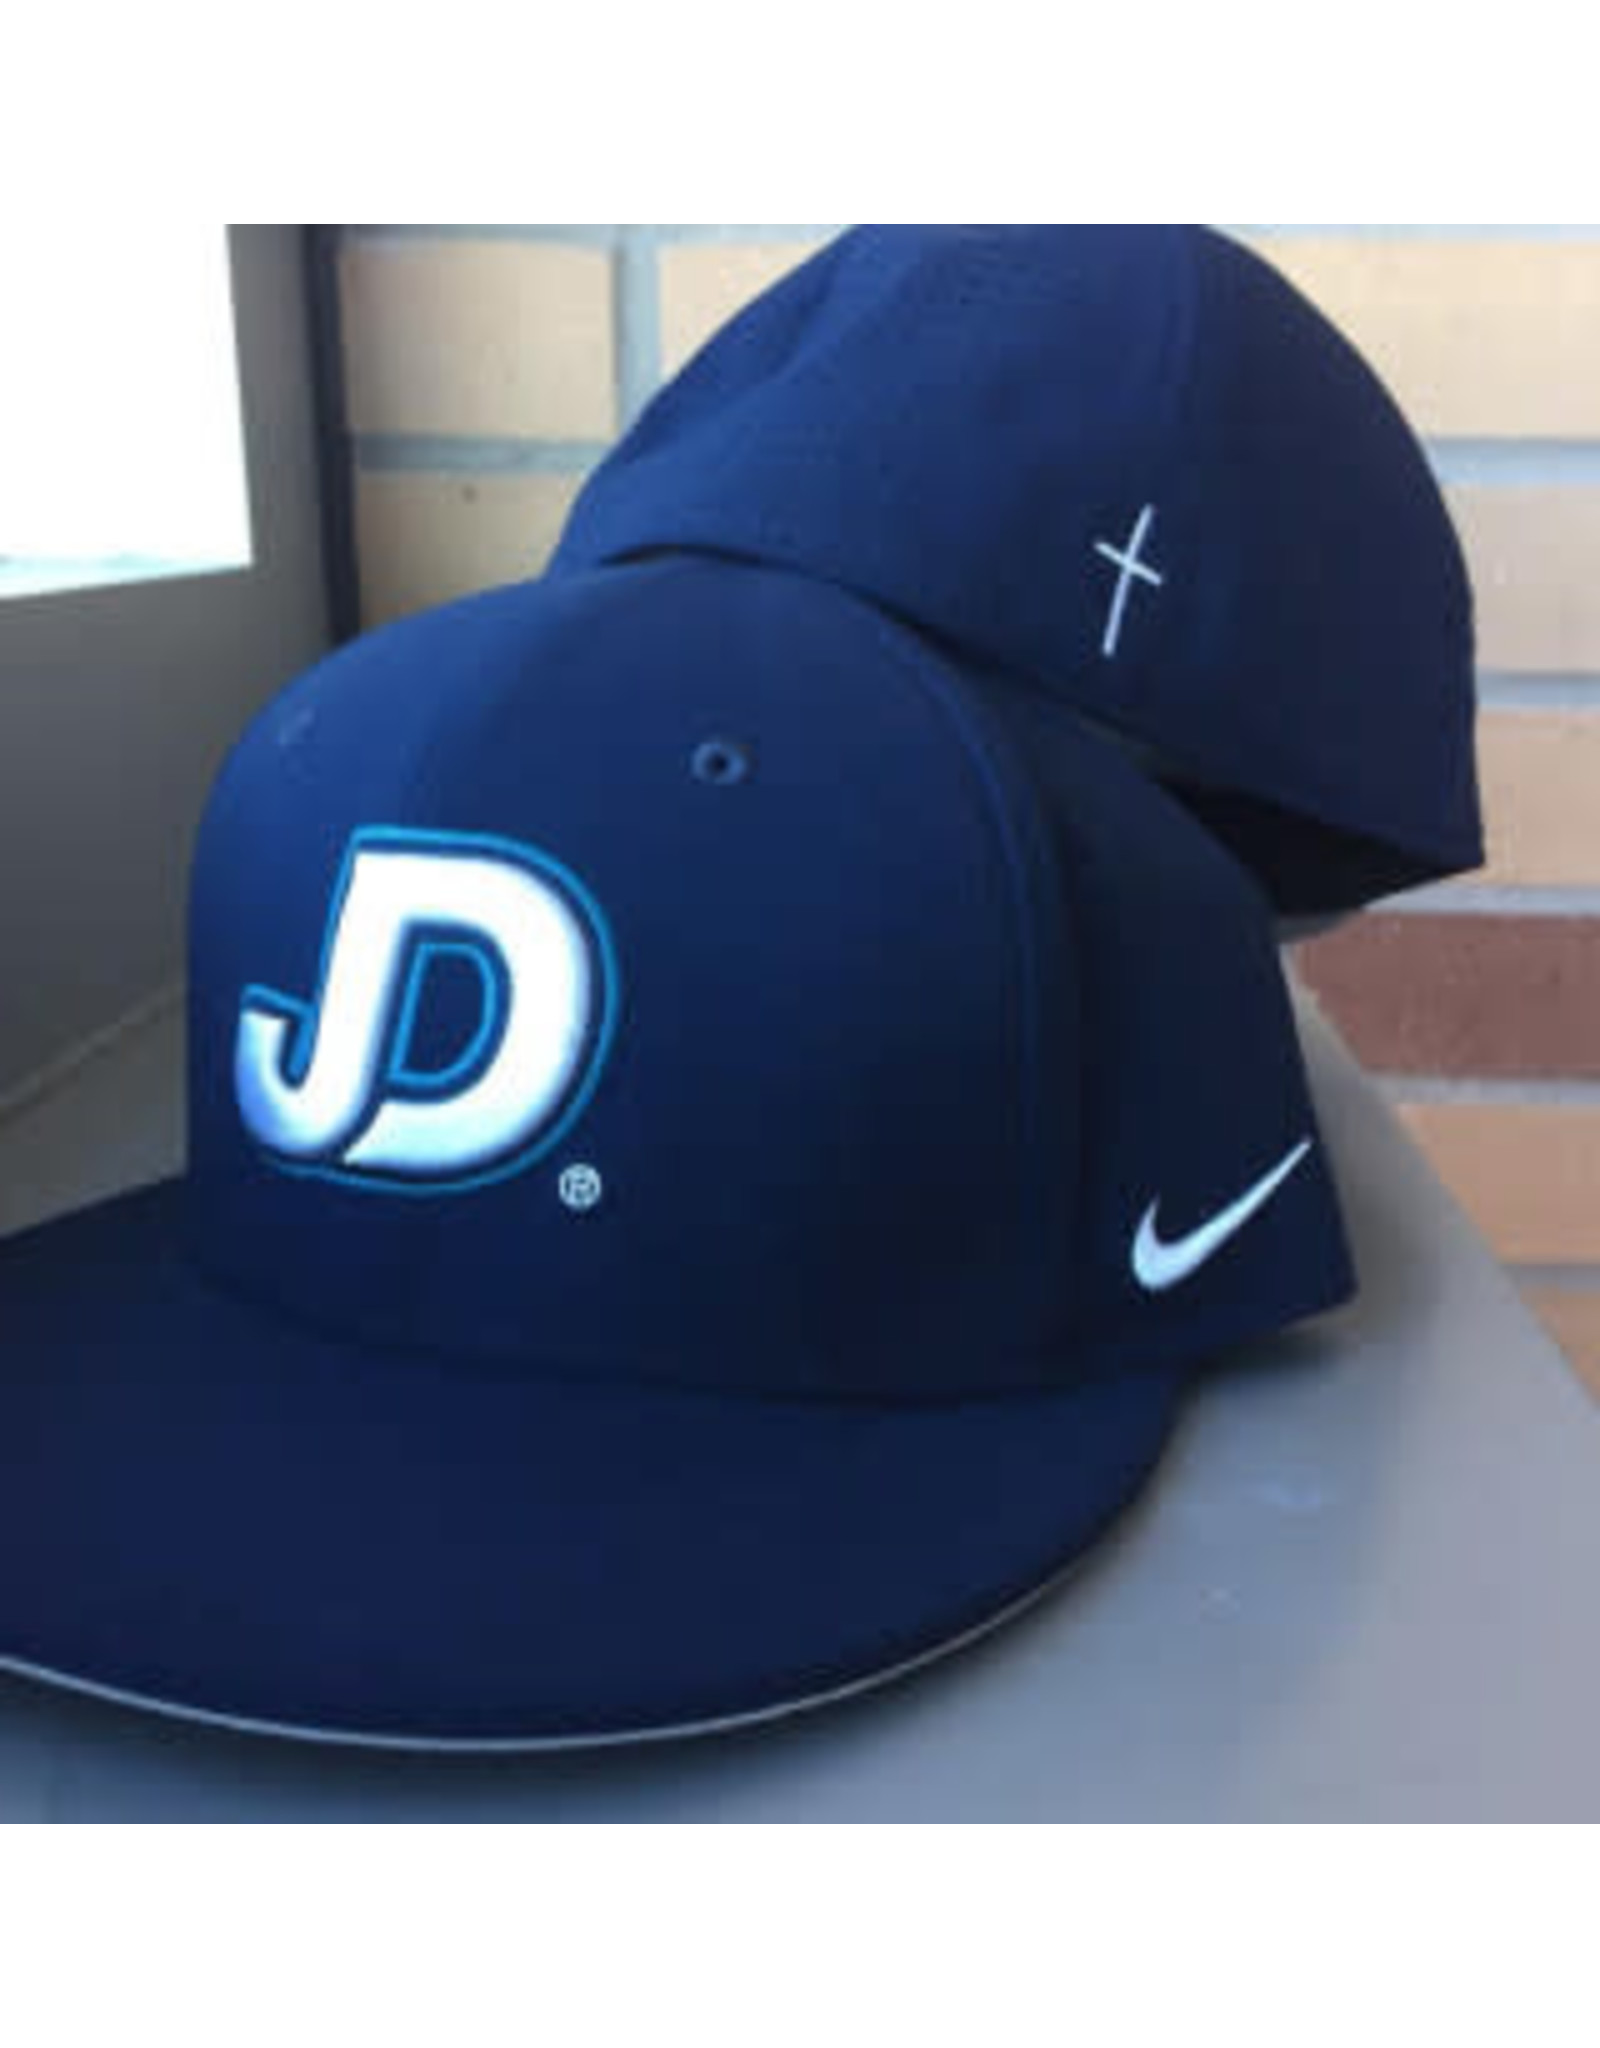 NON-UNIFORM Cap - JD Nike True Dri-fit Flat bill baseball hat, fitted